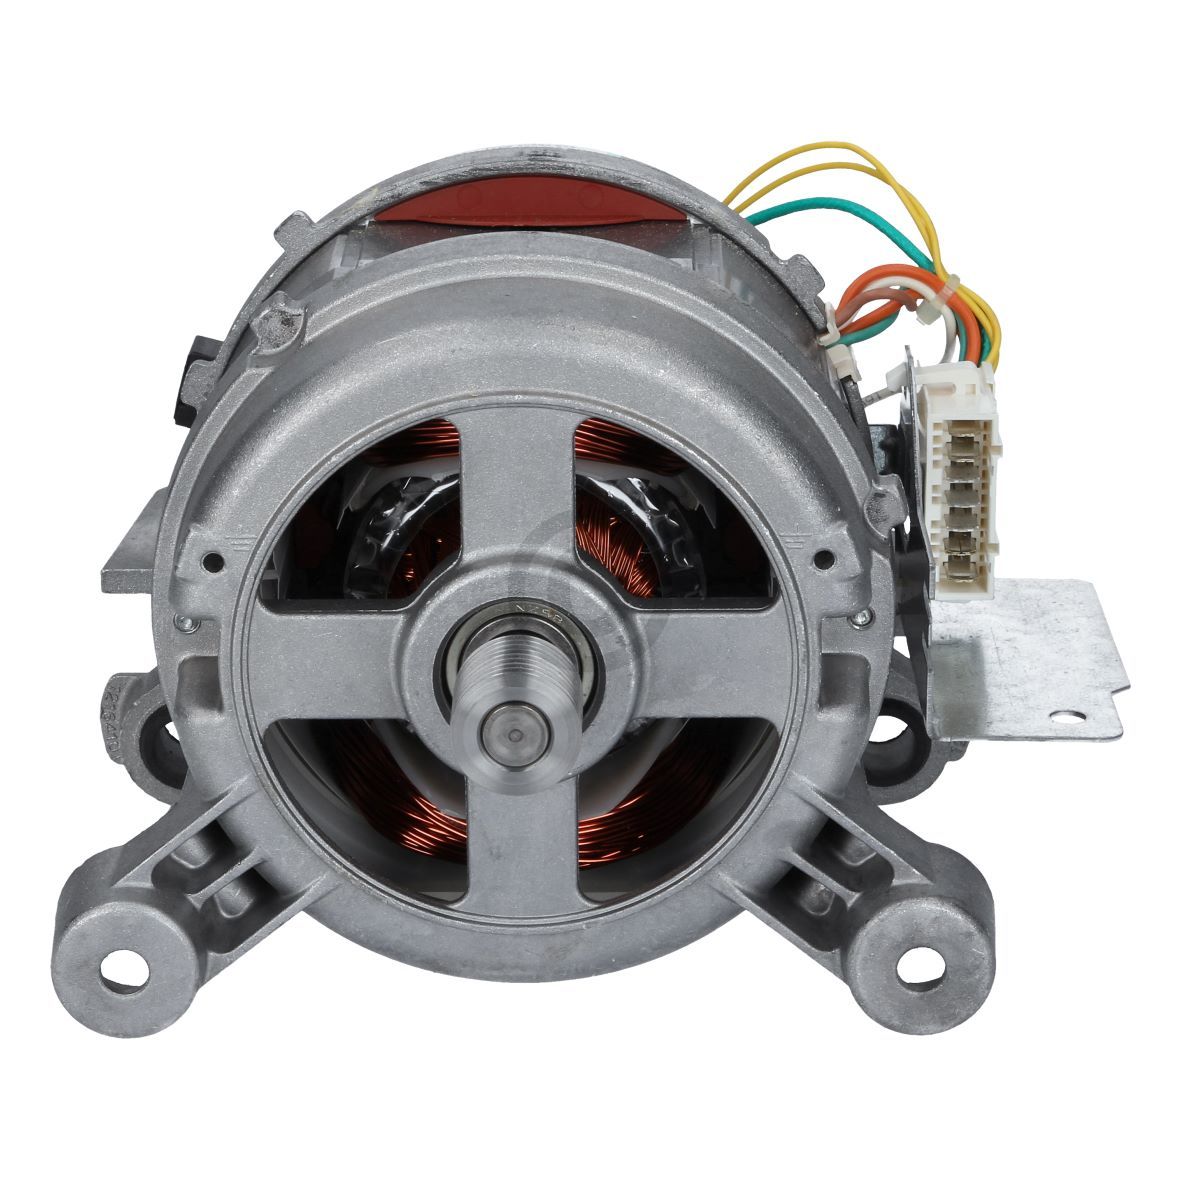 Motor Whirlpool 480111100362 Nidec Type 20584.623 für Waschmaschine